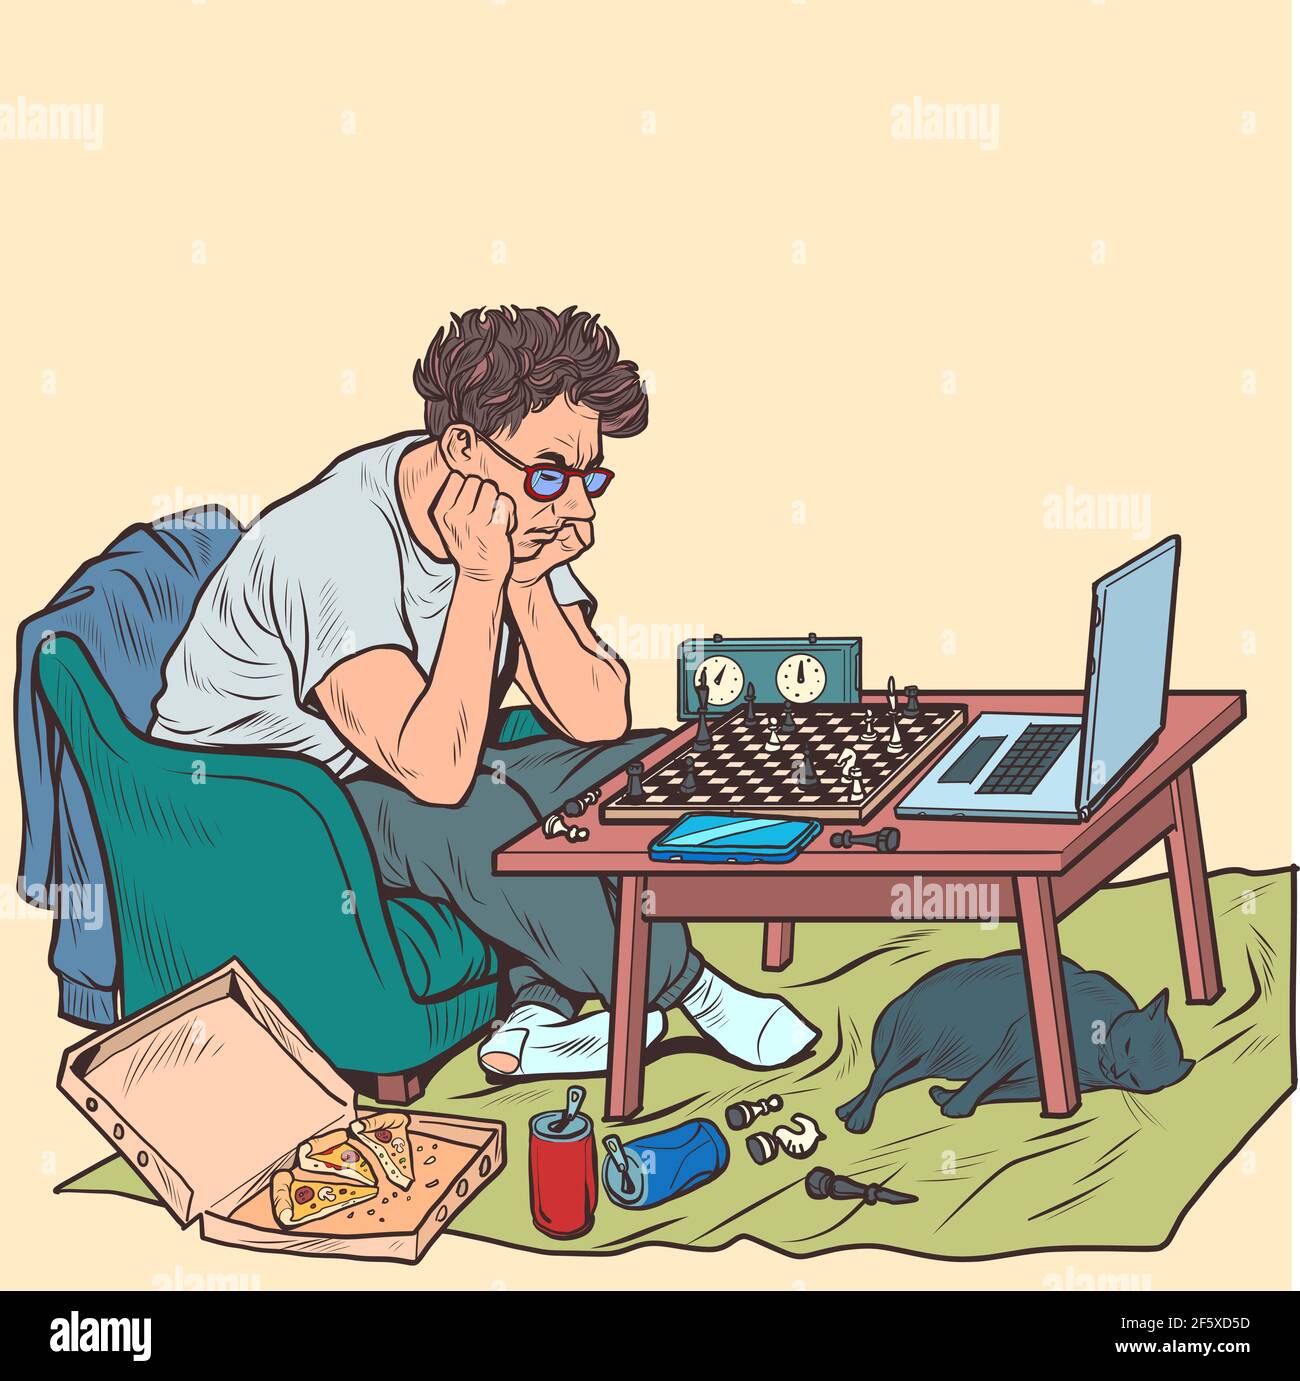 Un homme joue aux échecs en ligne avec un adversaire virtuel Illustration de Vecteur